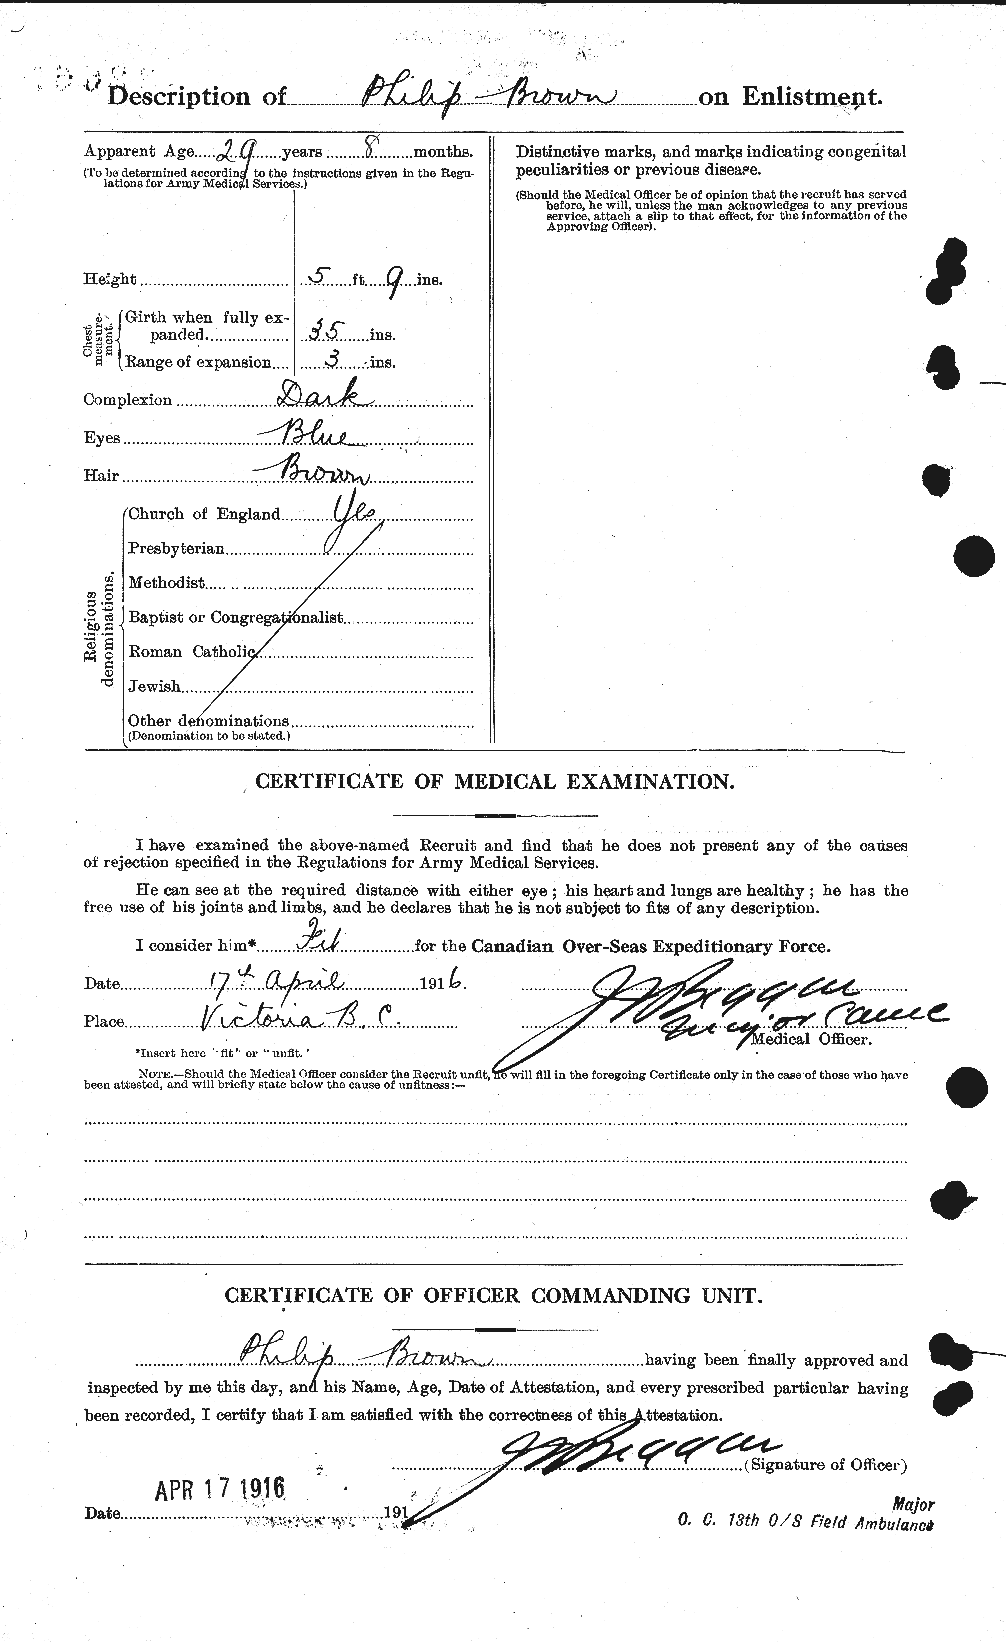 Dossiers du Personnel de la Première Guerre mondiale - CEC 267210b